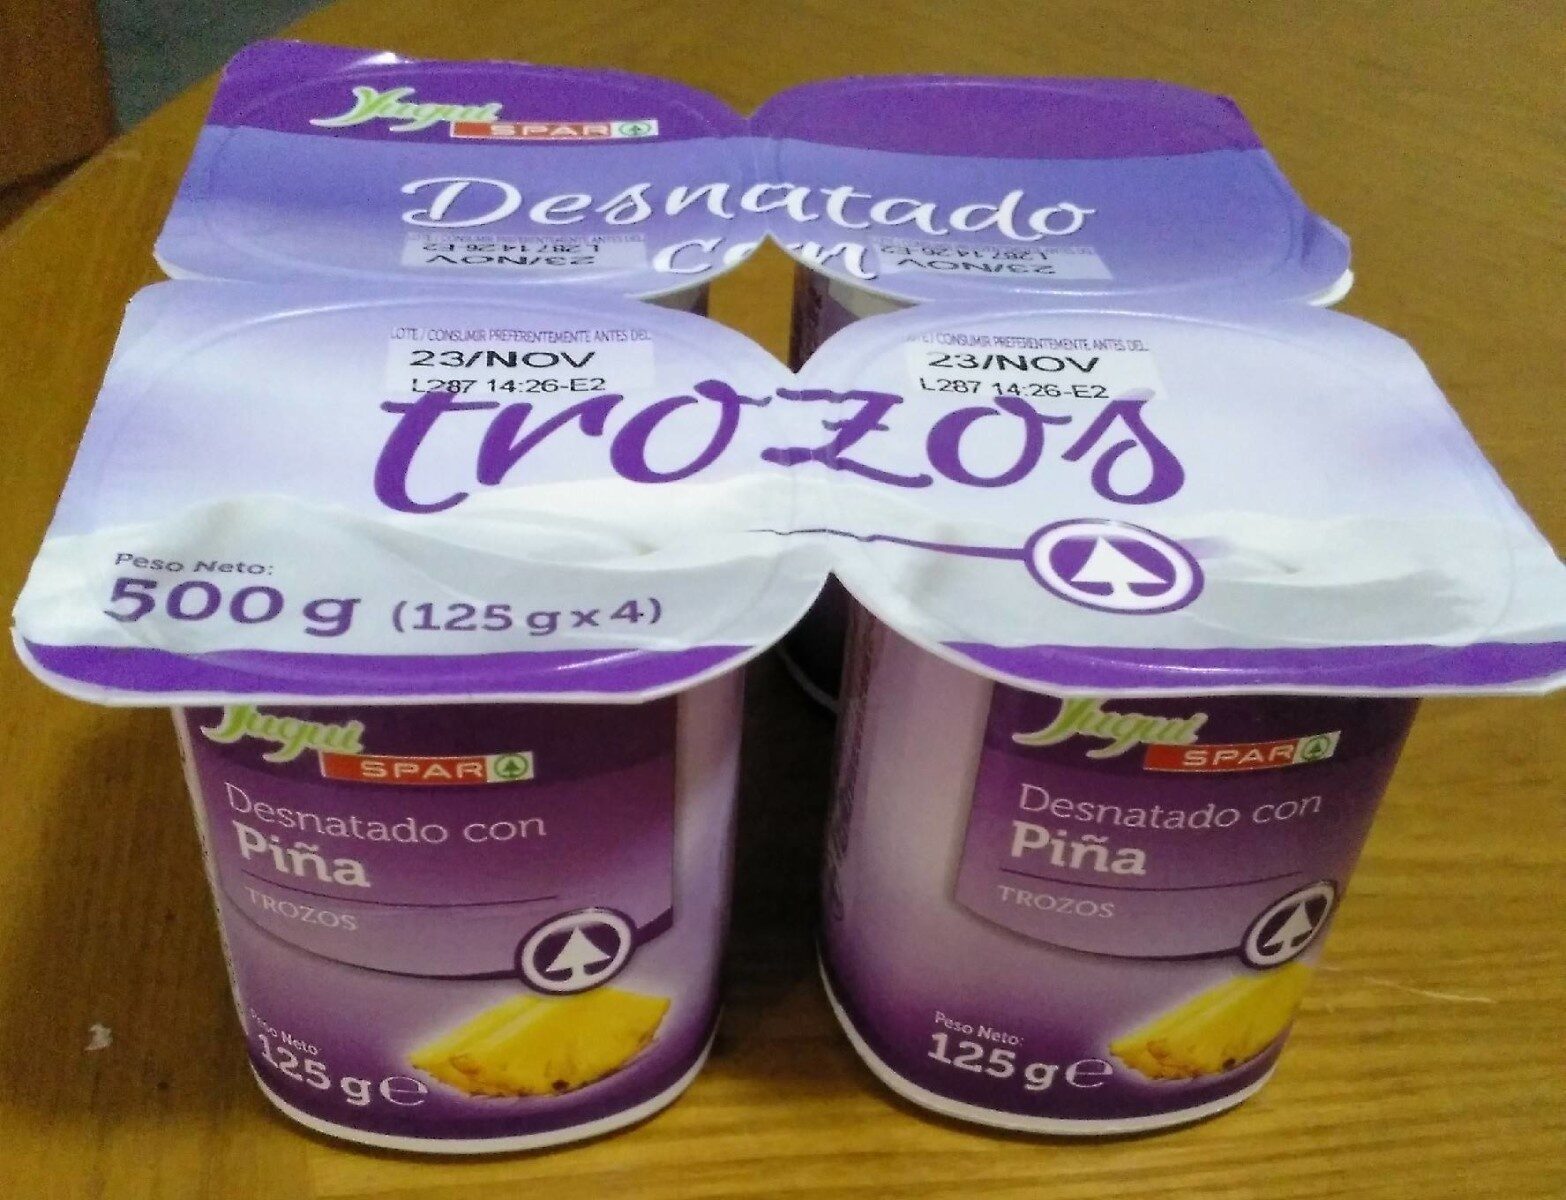 Yogur desnatado con piña (trozos) - Producto